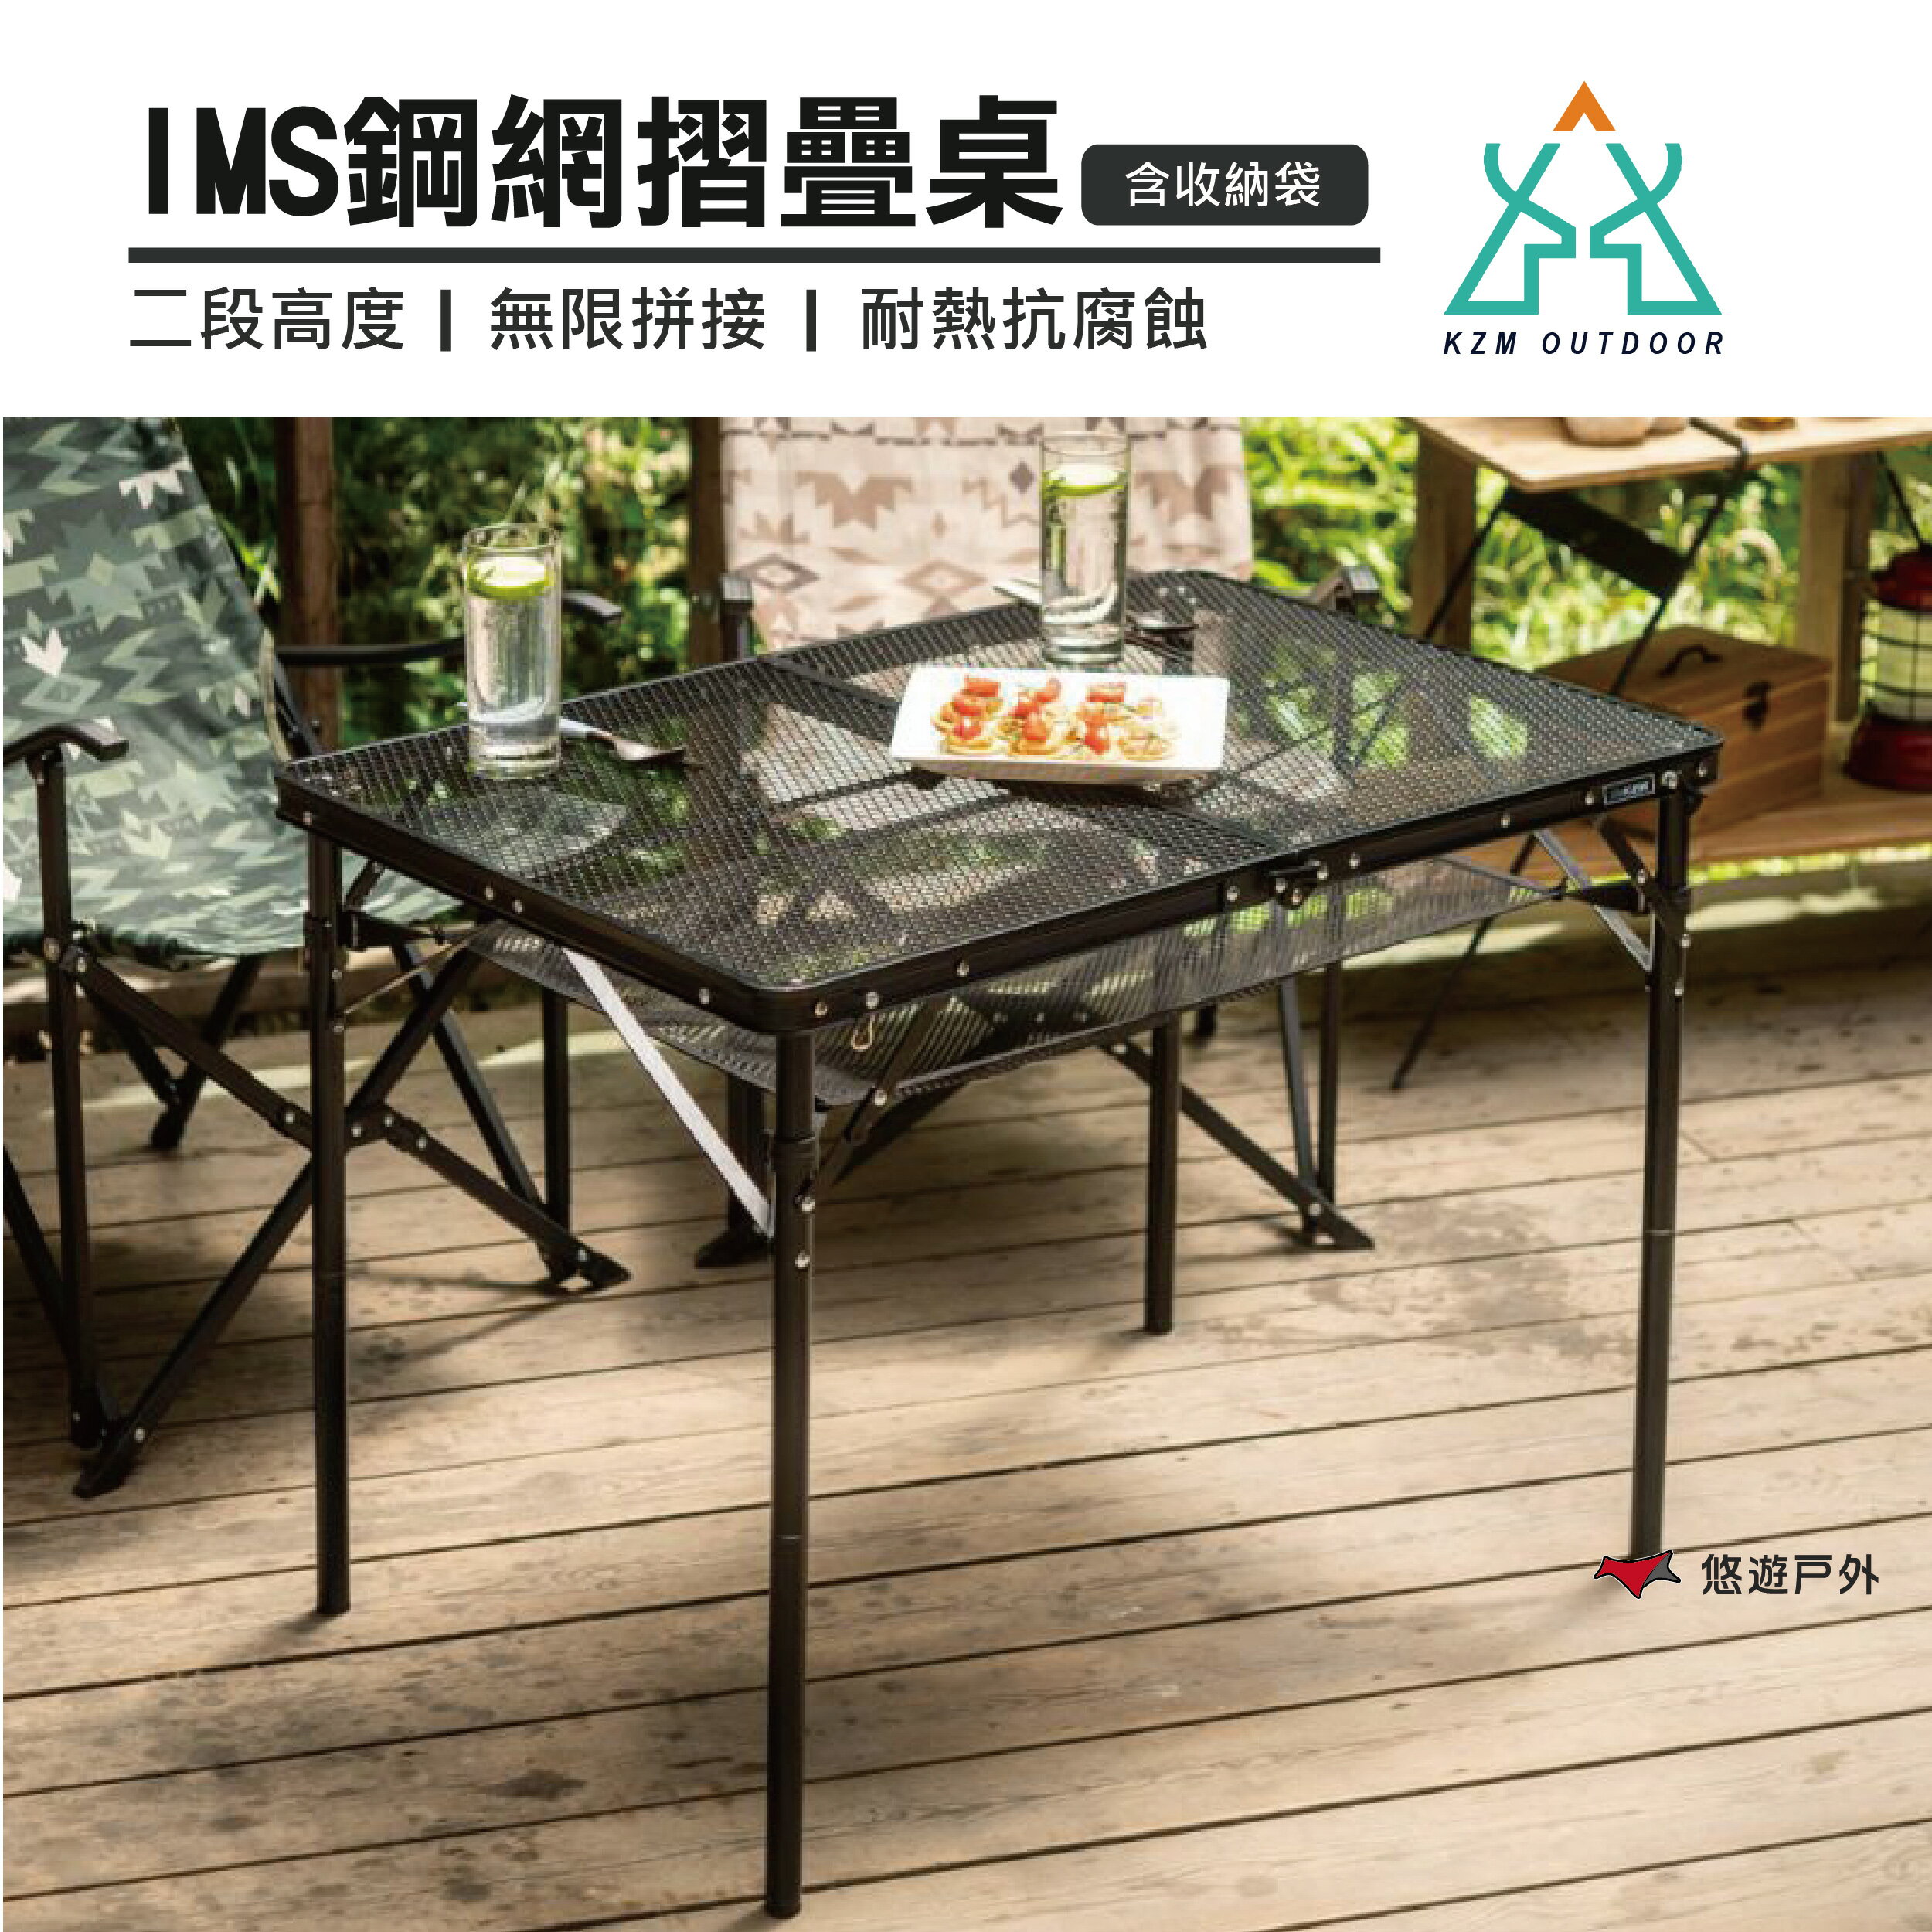 【KZM】 IMS鋼網折疊桌(含收納袋) K20T3U003 二段高度 摺疊桌 露營桌 戶外 釣魚 悠遊戶外